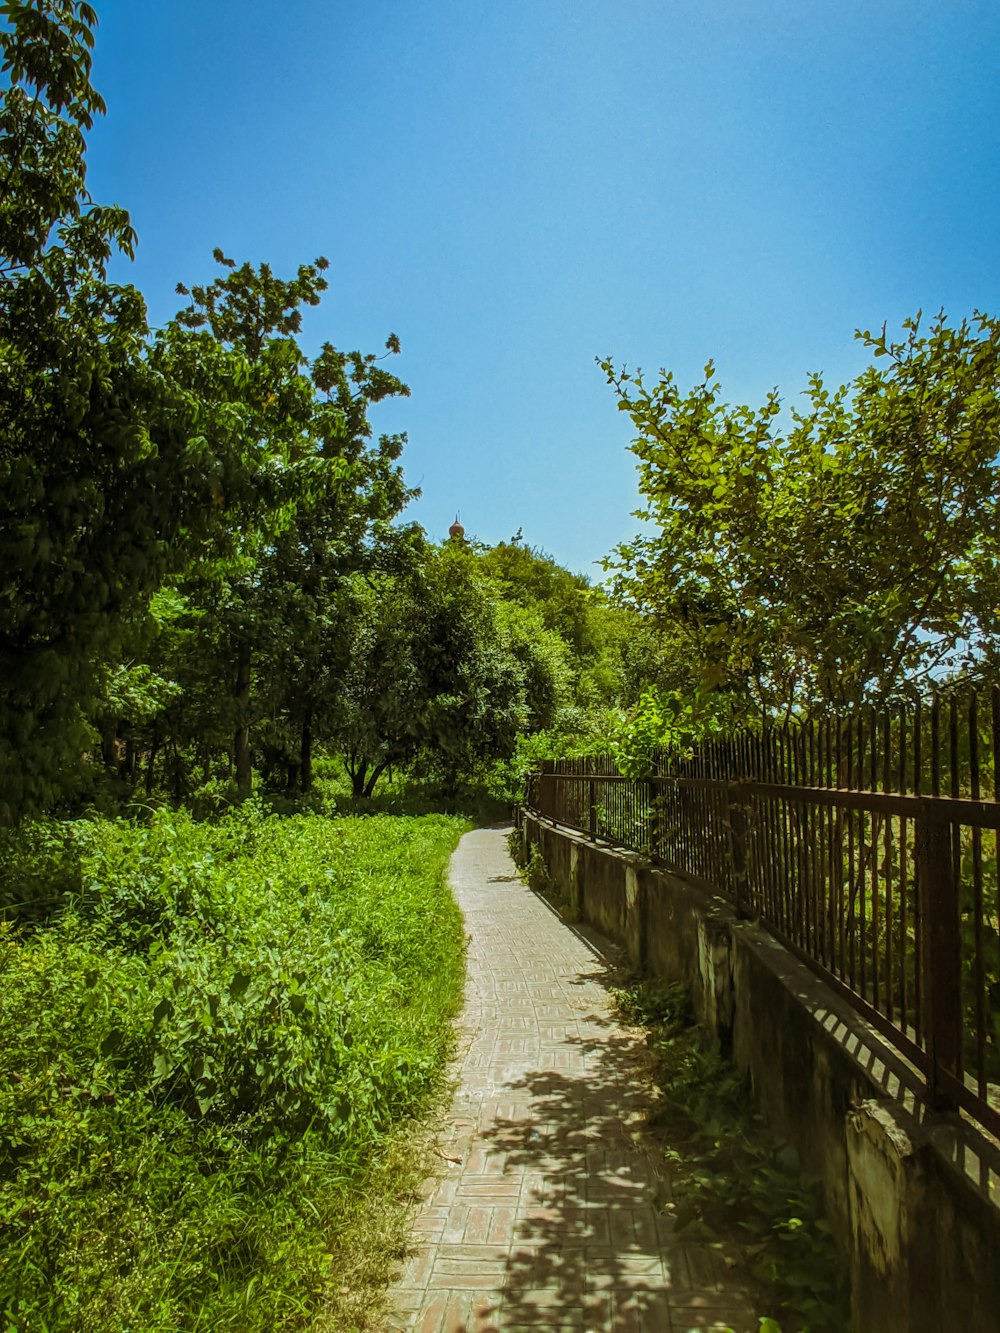 Un sentier au milieu d’un parc verdoyant